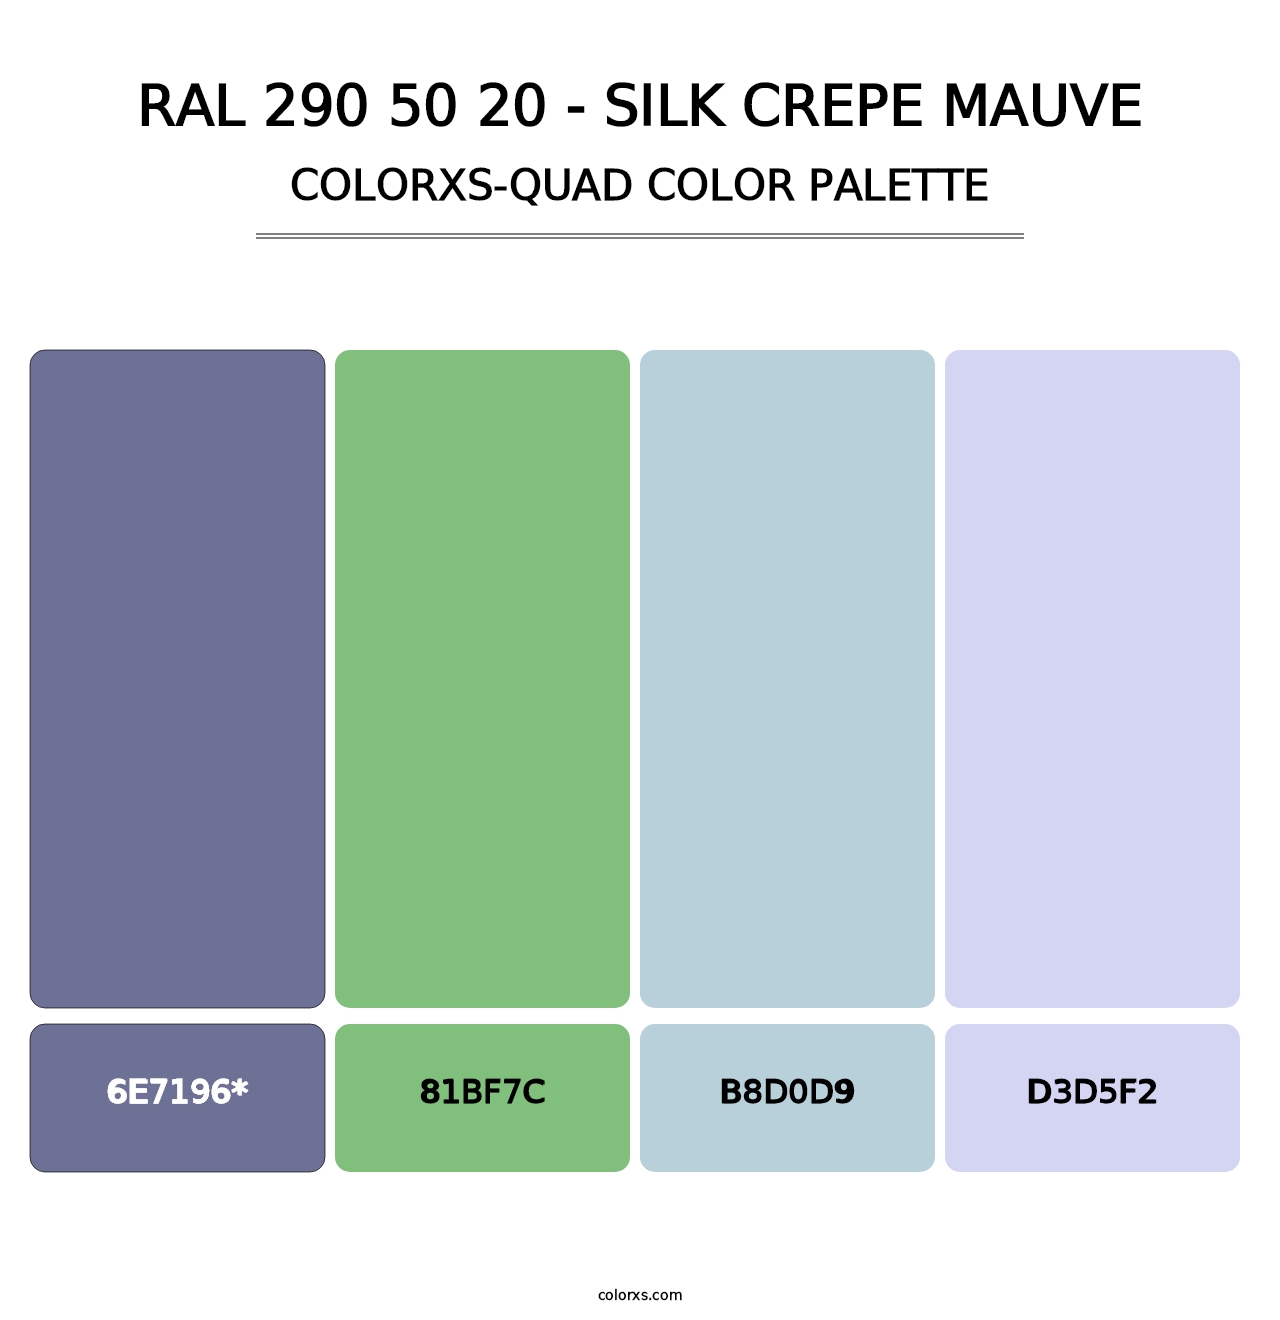 RAL 290 50 20 - Silk Crepe Mauve - Colorxs Quad Palette